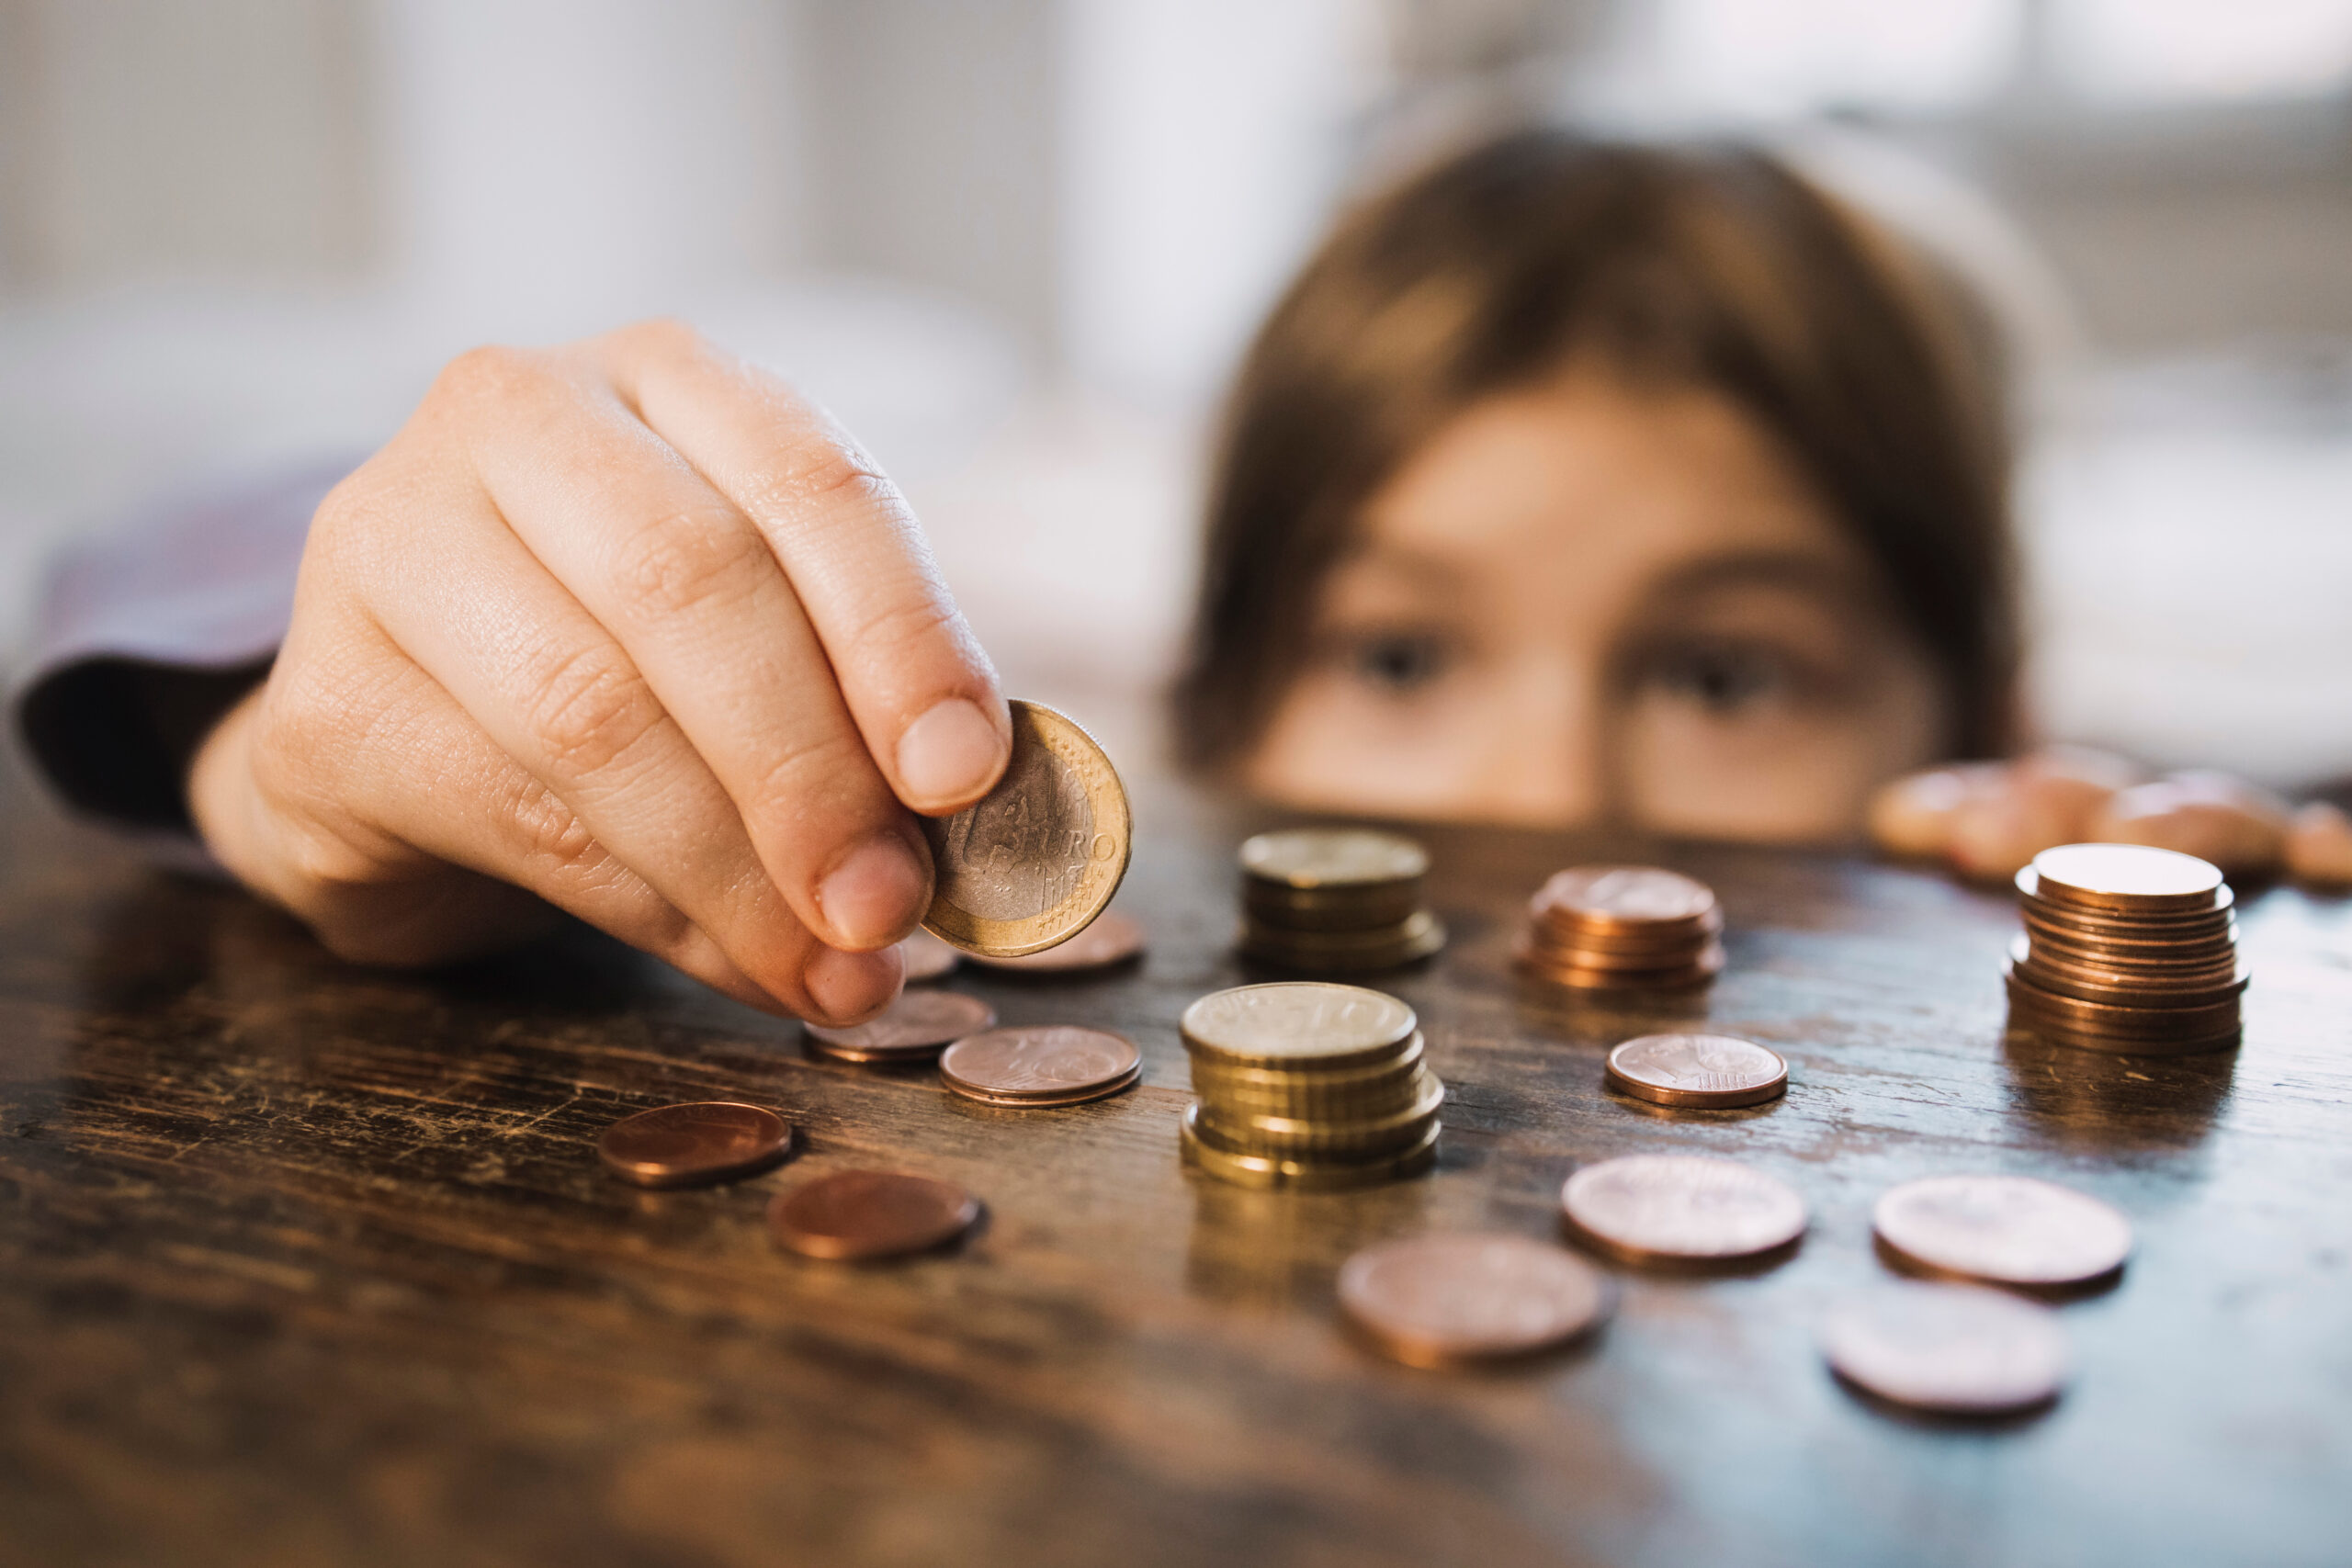 Ein Kind schaut über eine Tischkante. Auf dem Tisch liegen einige Euro-Münzen, die das Kind vorsichtig in die Hand nimmt.